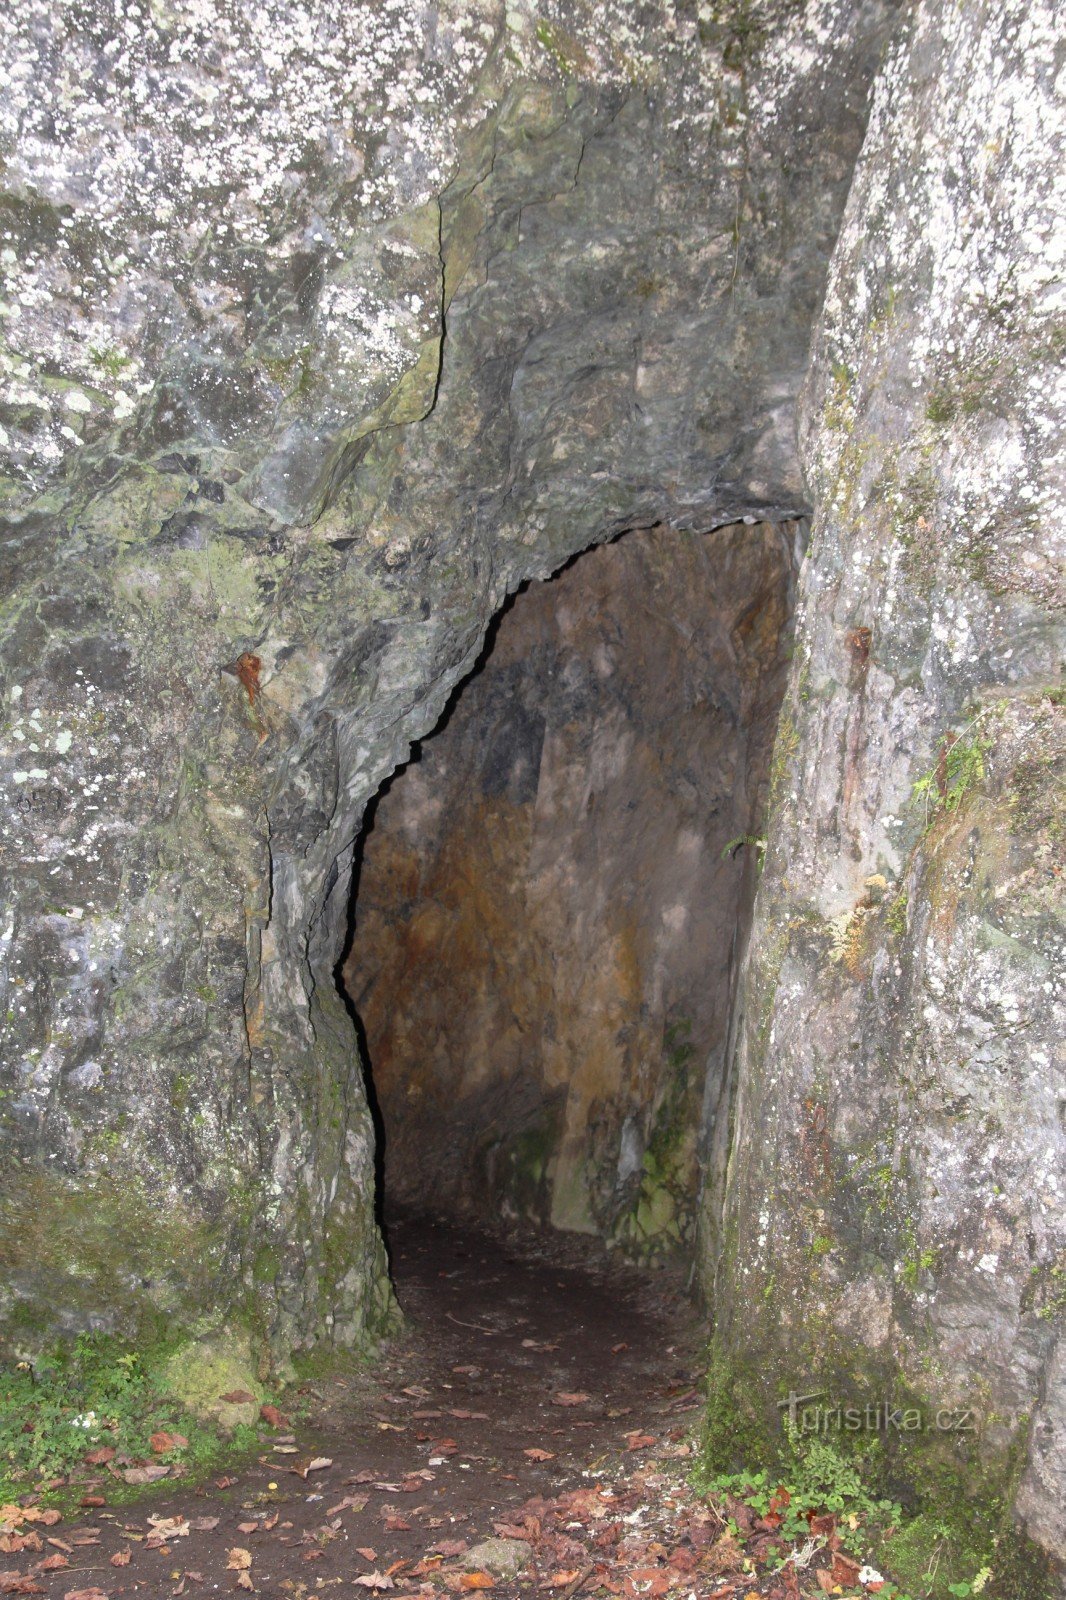 Eingang zur Kalova-díra-Höhle